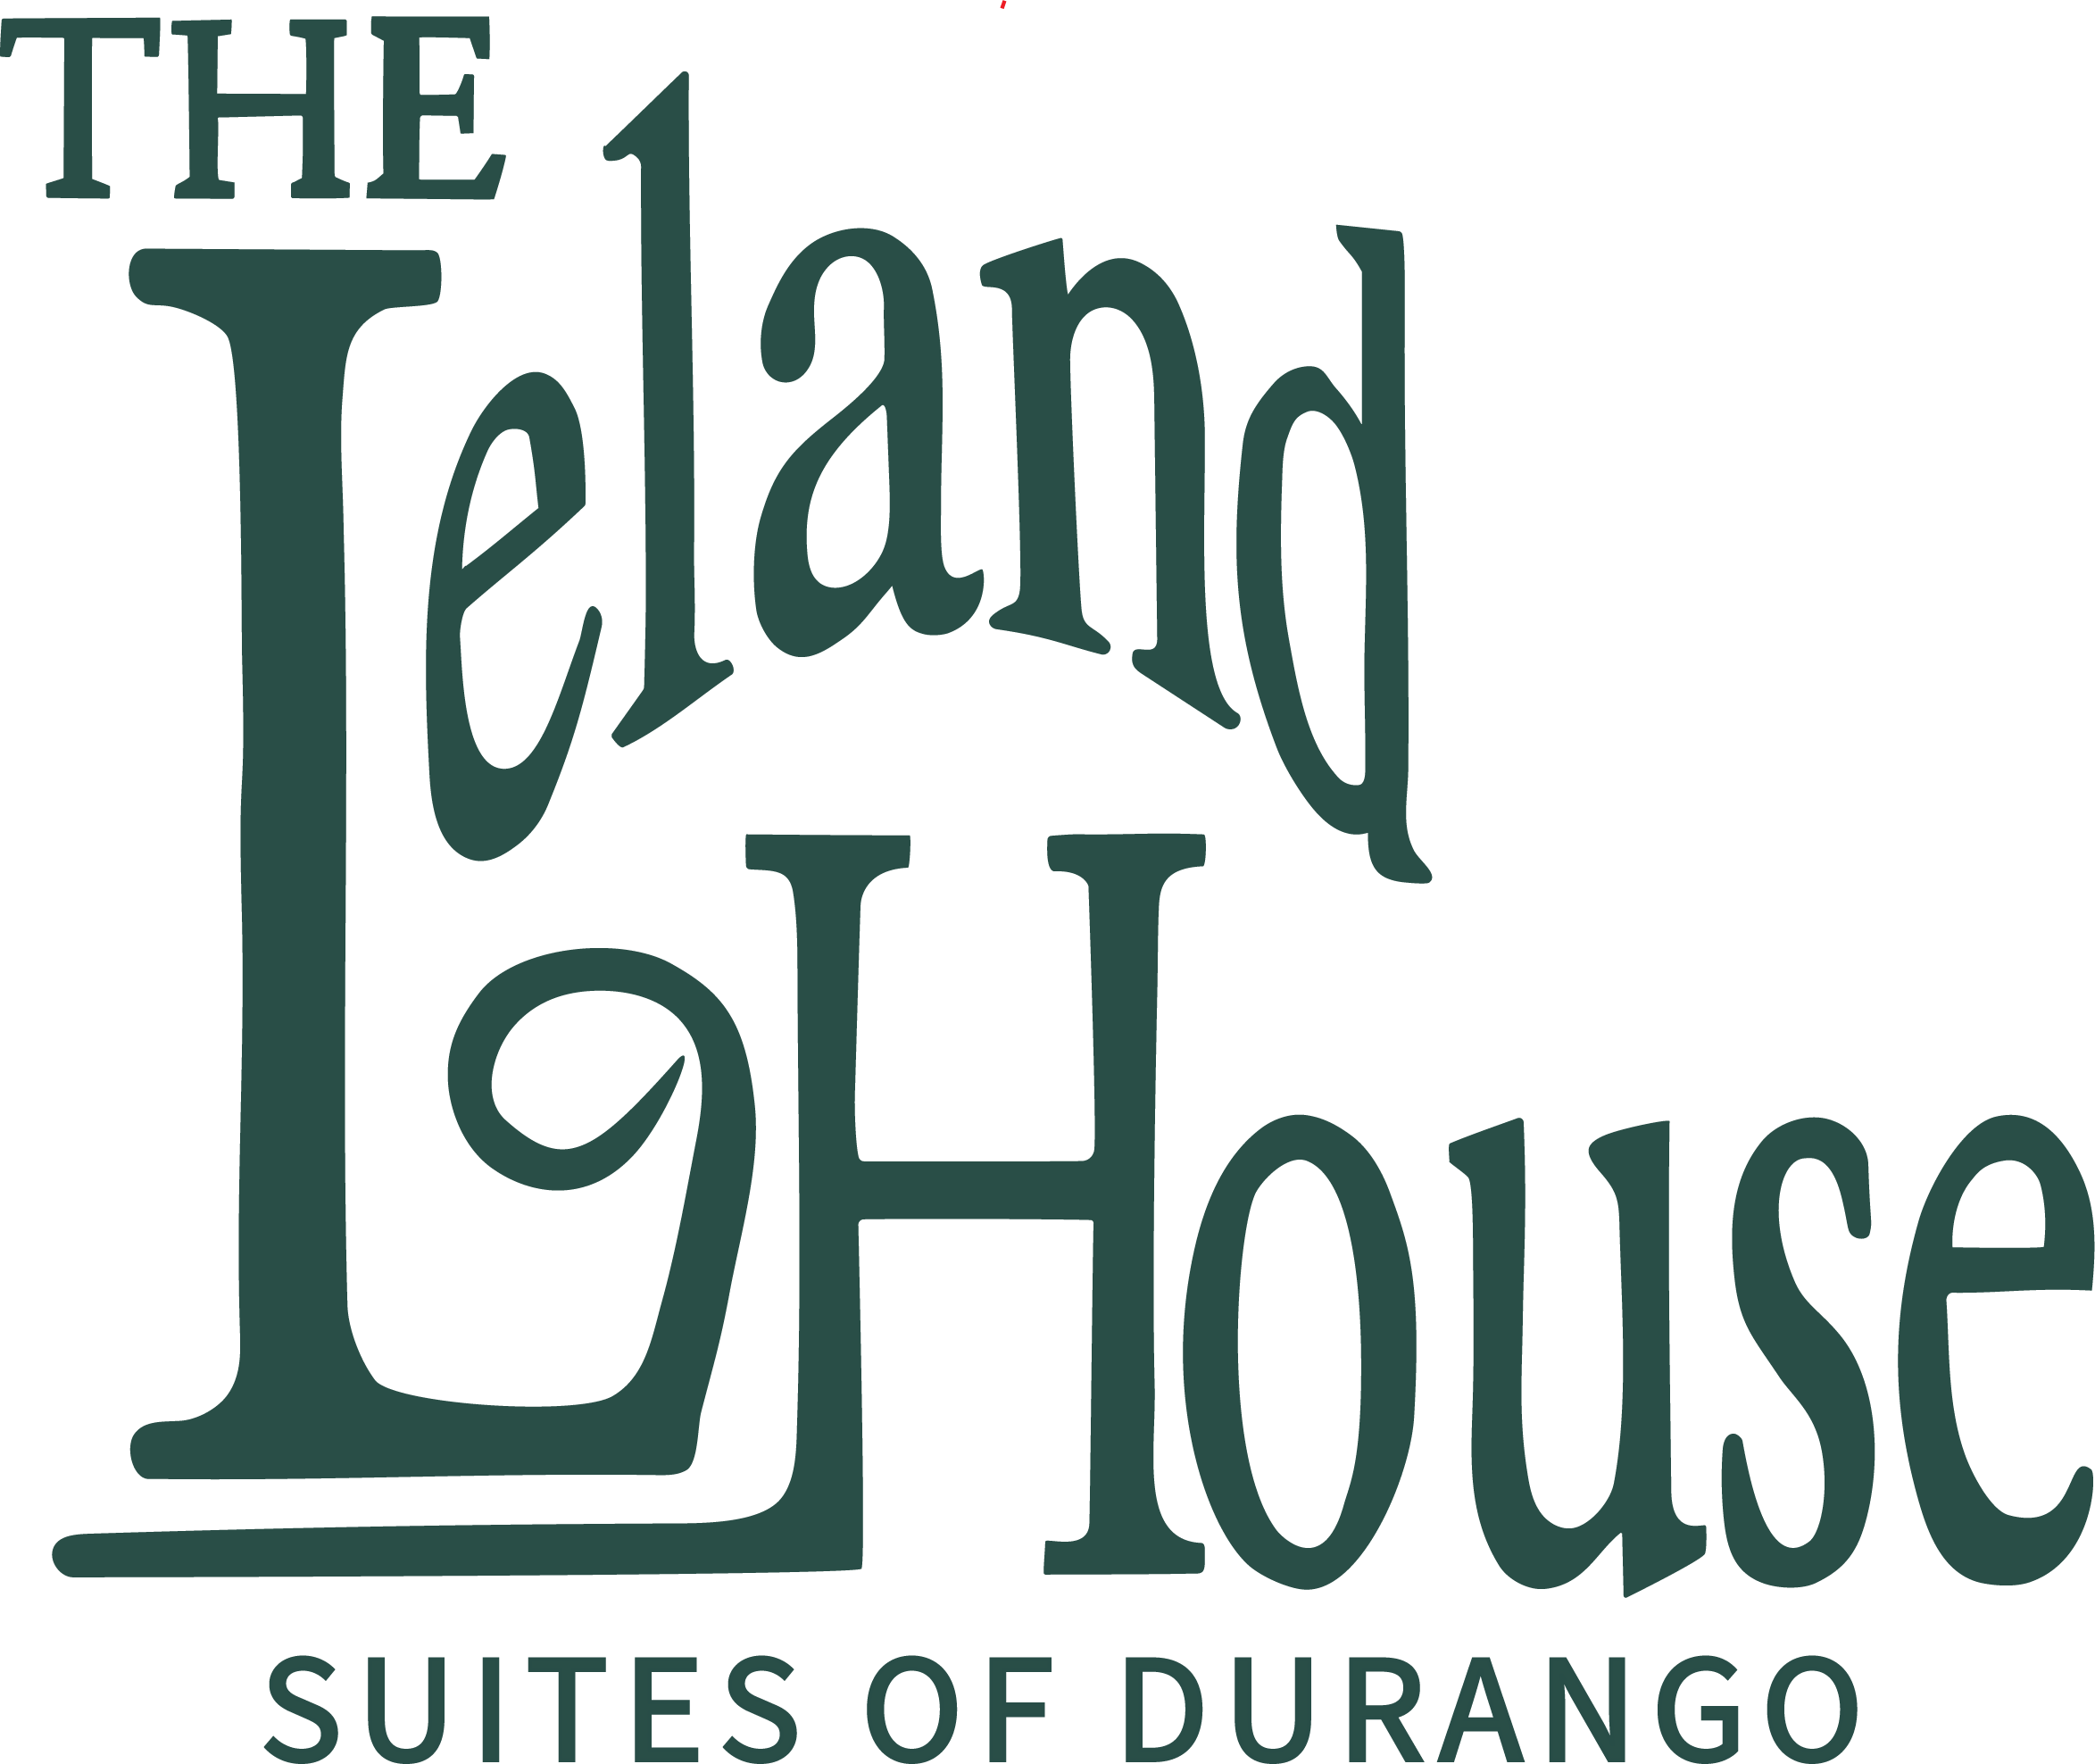 The Leland House